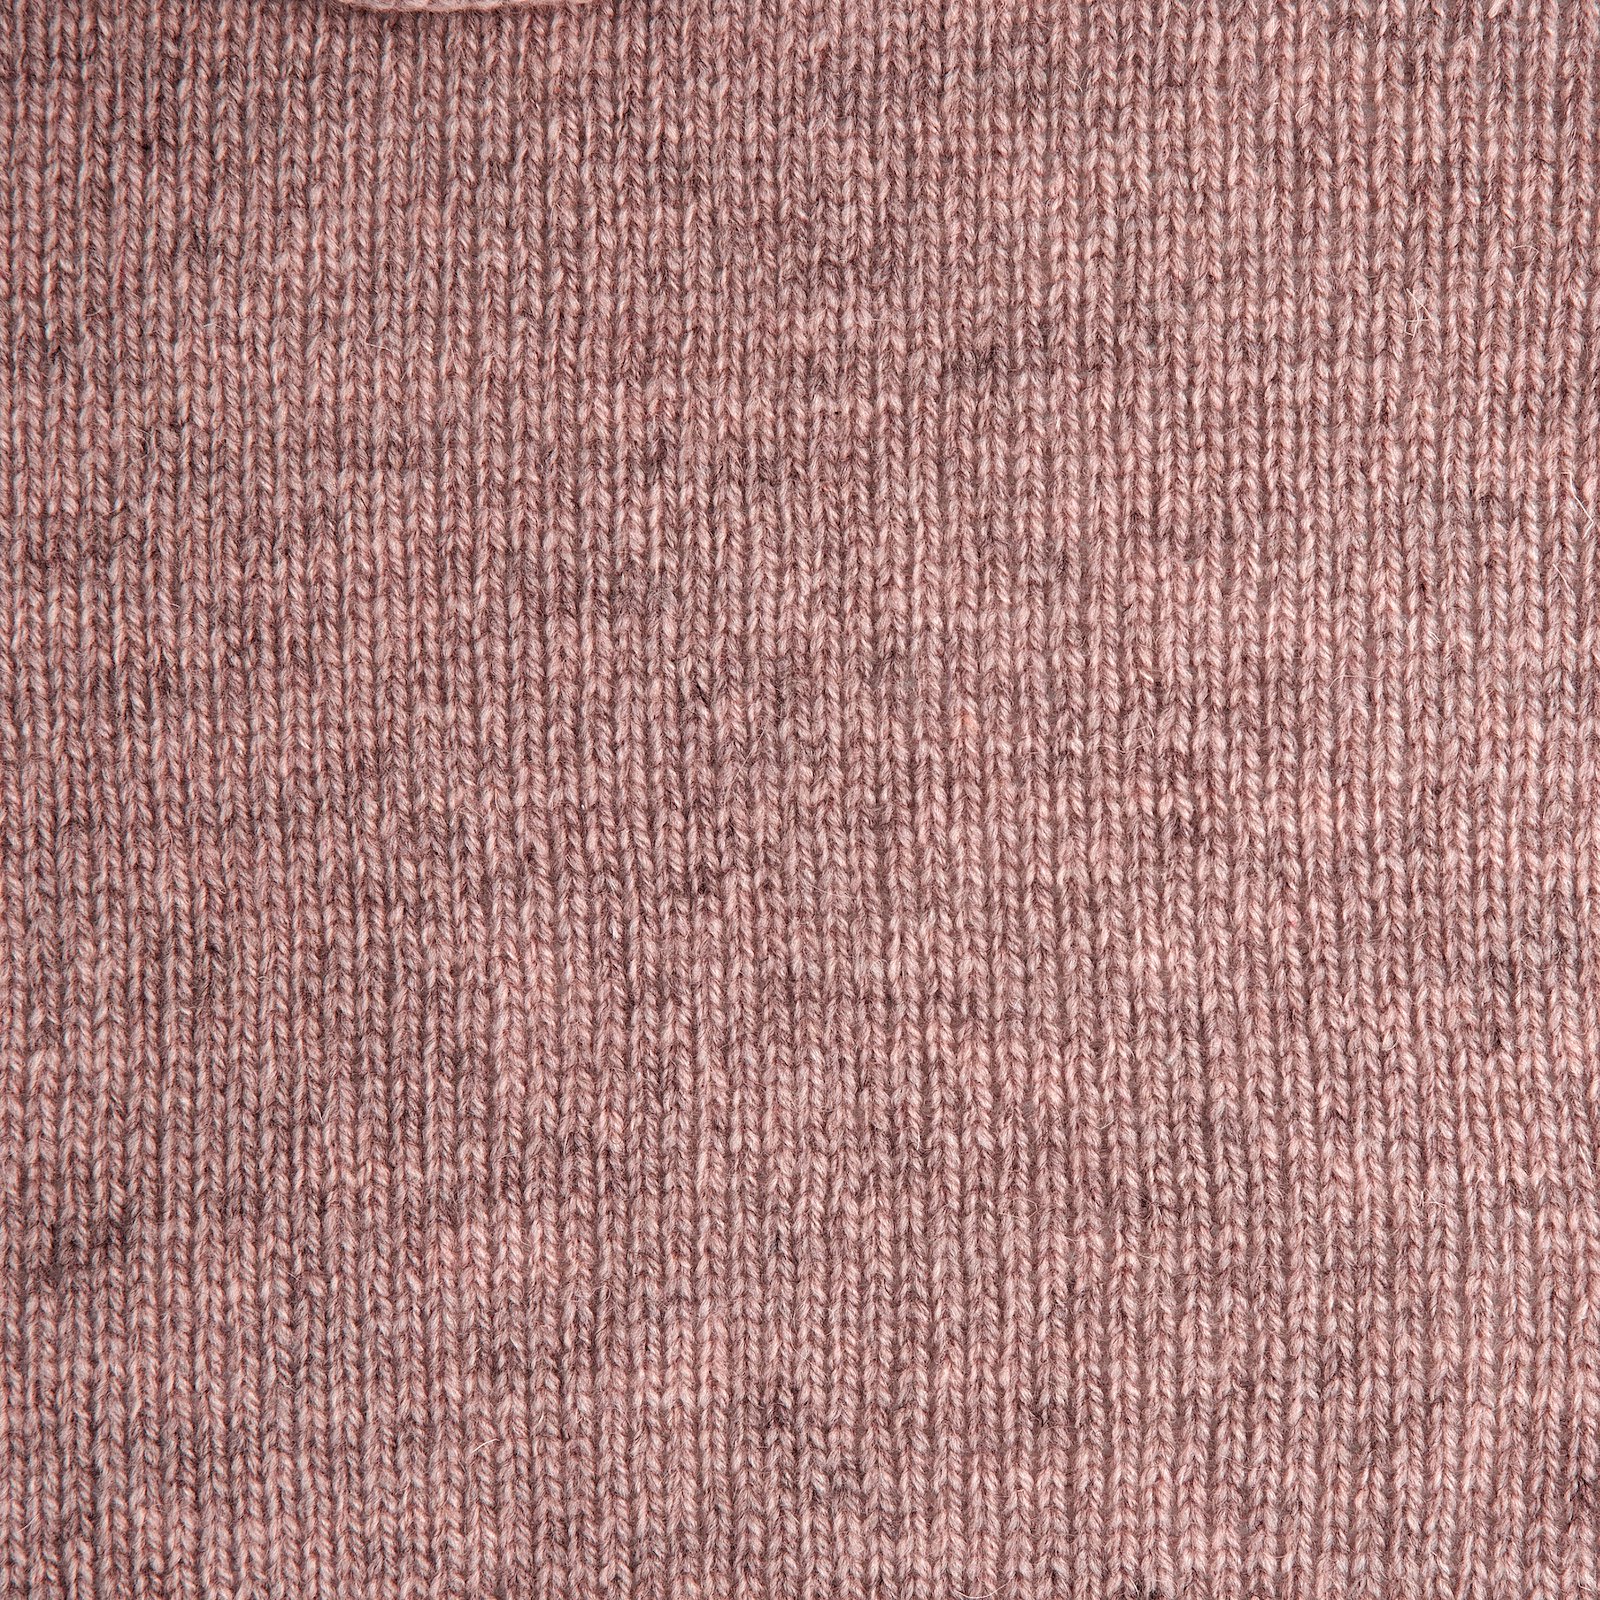 FRAYA, 100% wool yarn "Mindful", dusty heather mel 90053378_sskit